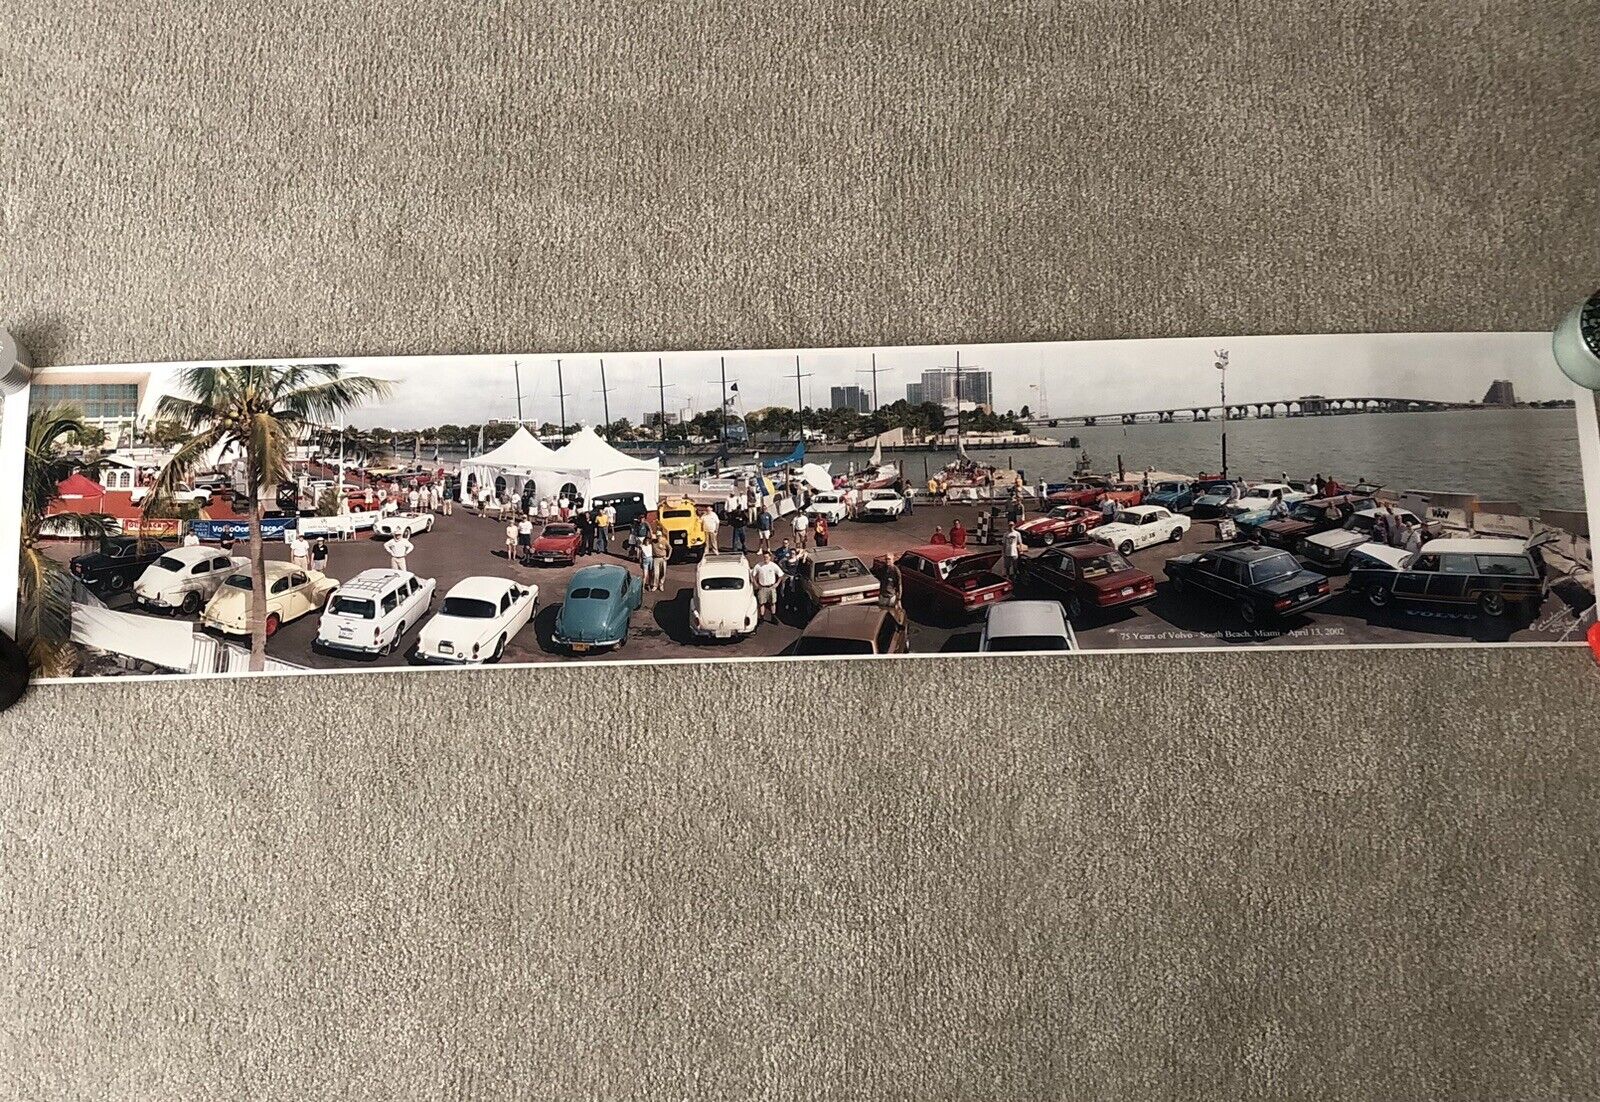 75 Years of Volvo Poster Panaramic Photo 2002 Miami Florida Chadwick